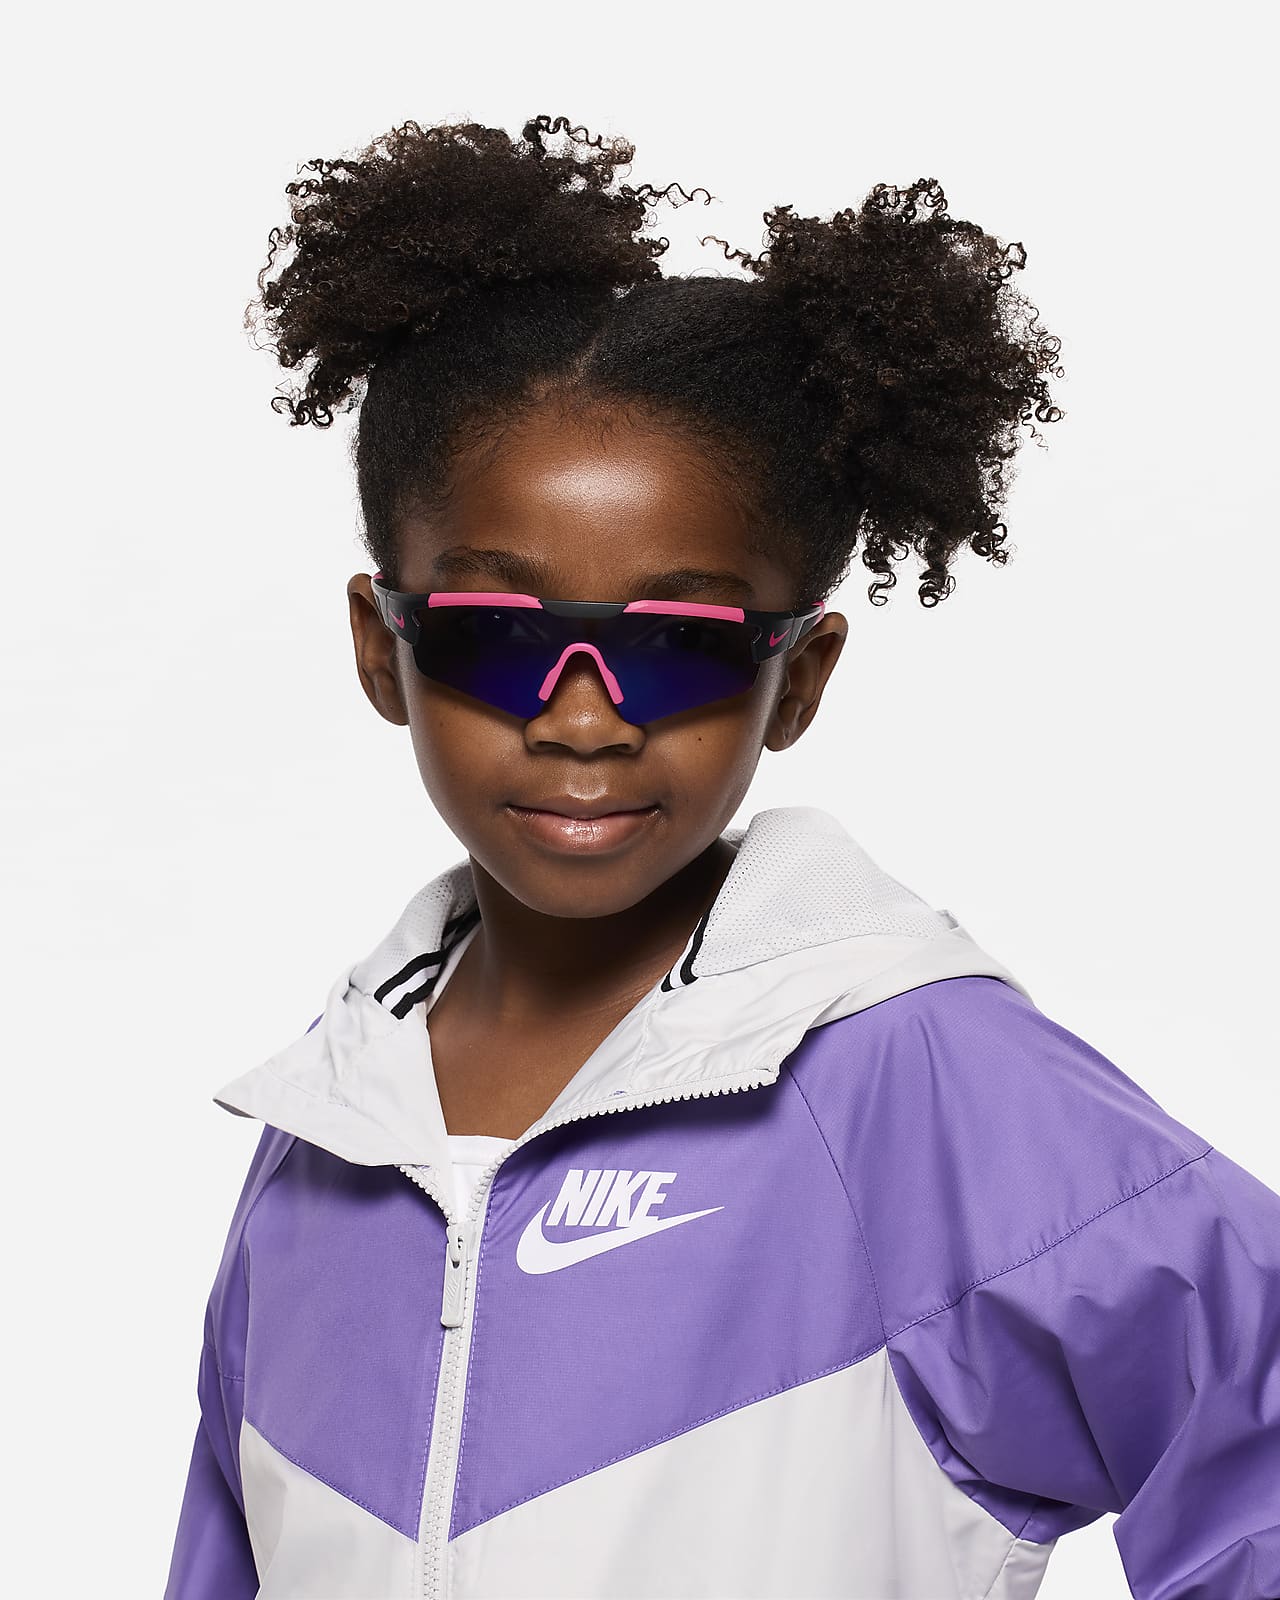 Nike Cloak Youth Mirrored Sunglasses